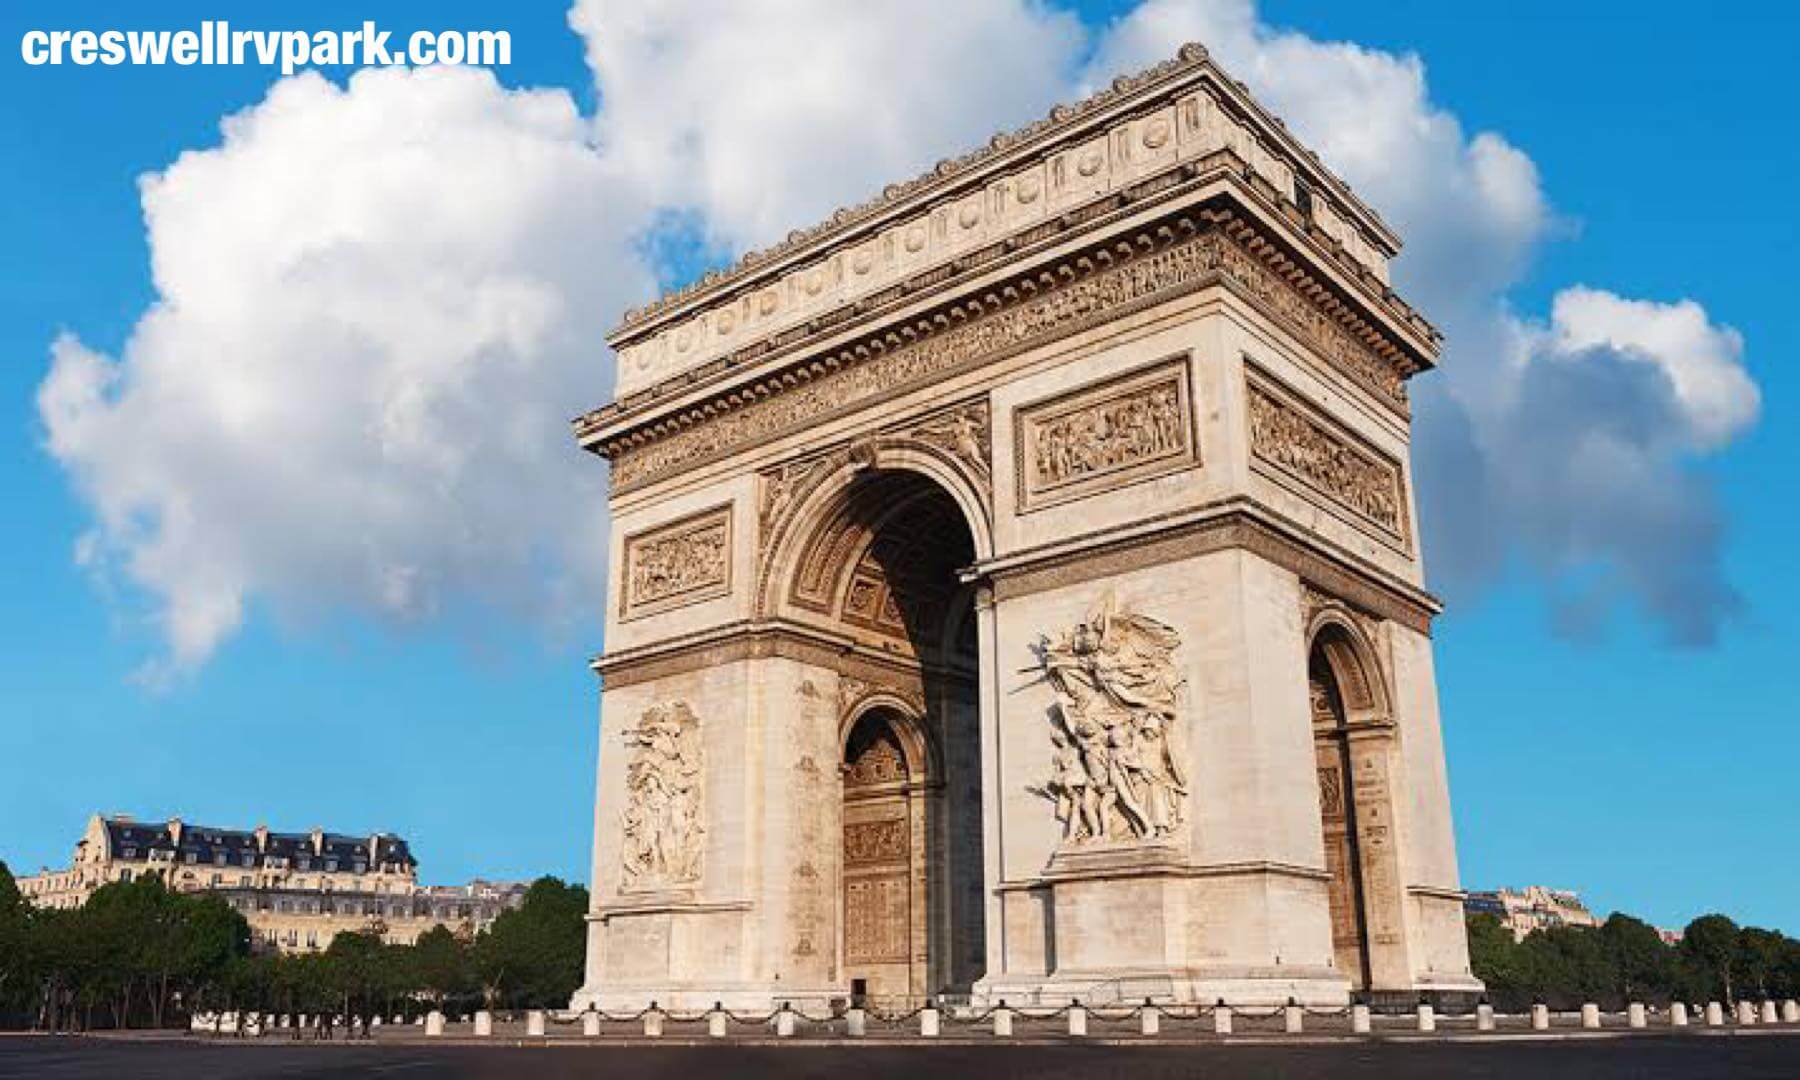 ประตูชัย Arc de Triomphe